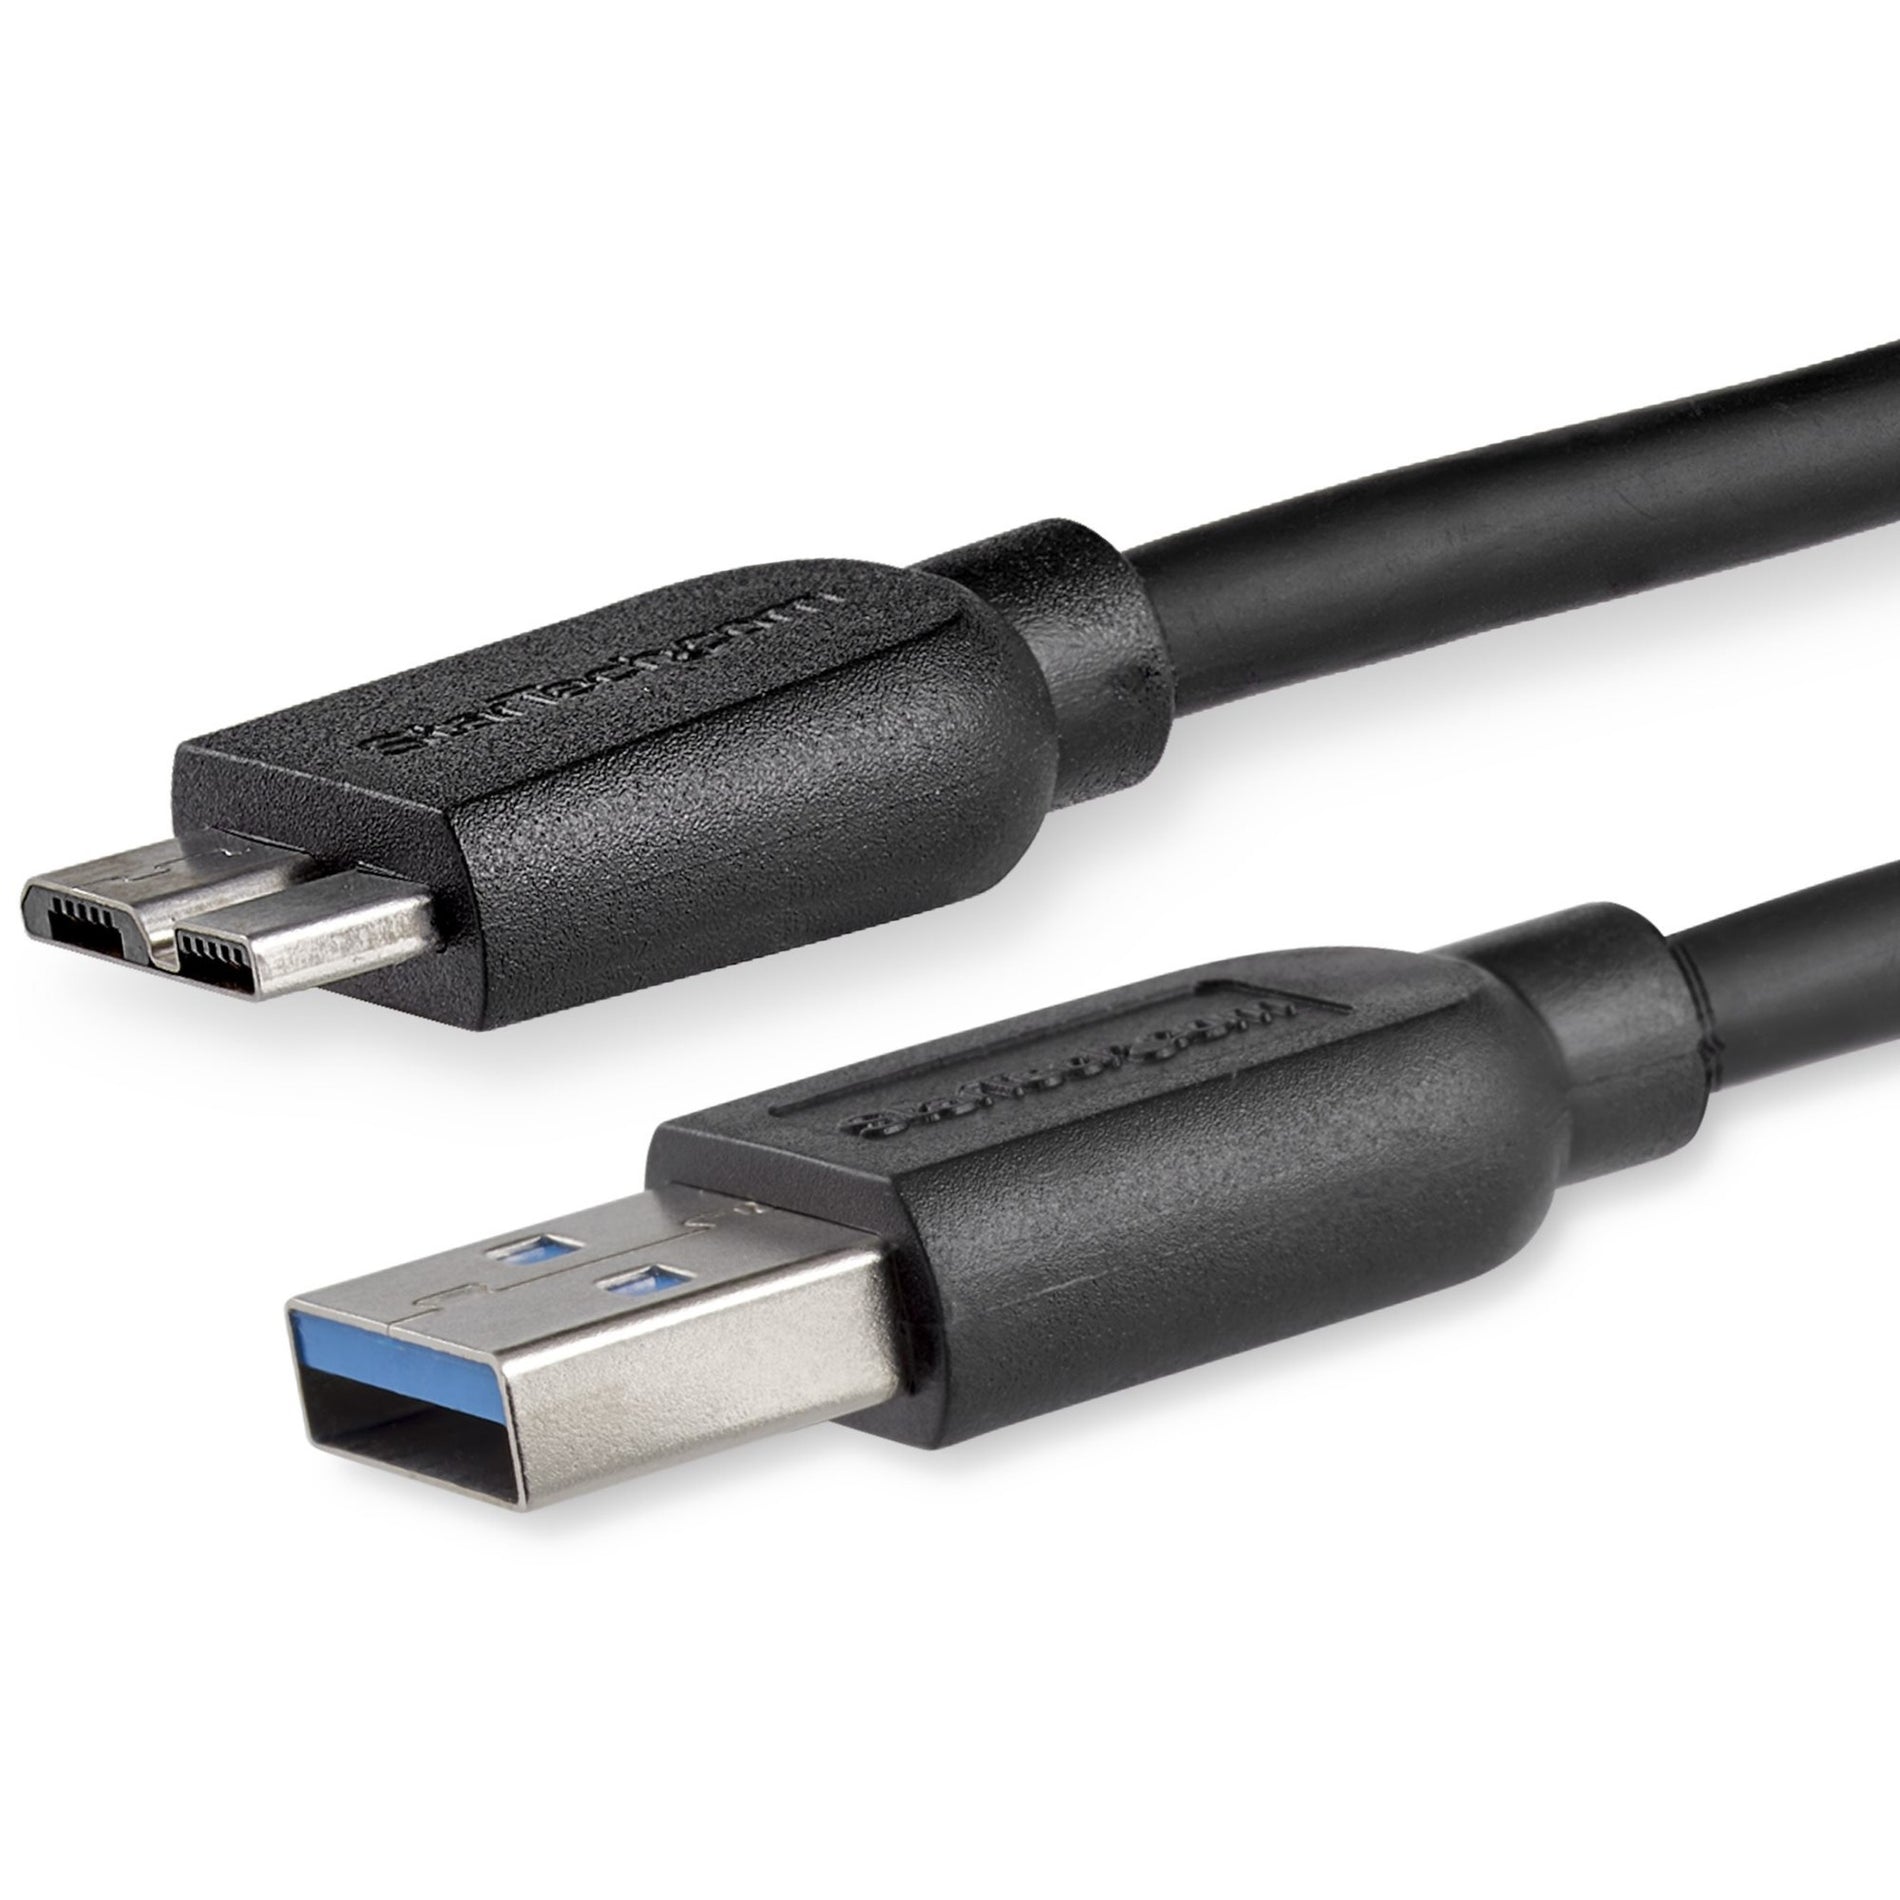 スタートレック・ドットコム USB3AUB2MS 2m (6ft) スリム スーパースピード USB 3.0 A から Micro B ケーブル - M/M 高速データ転送 柔軟で耐久性がある